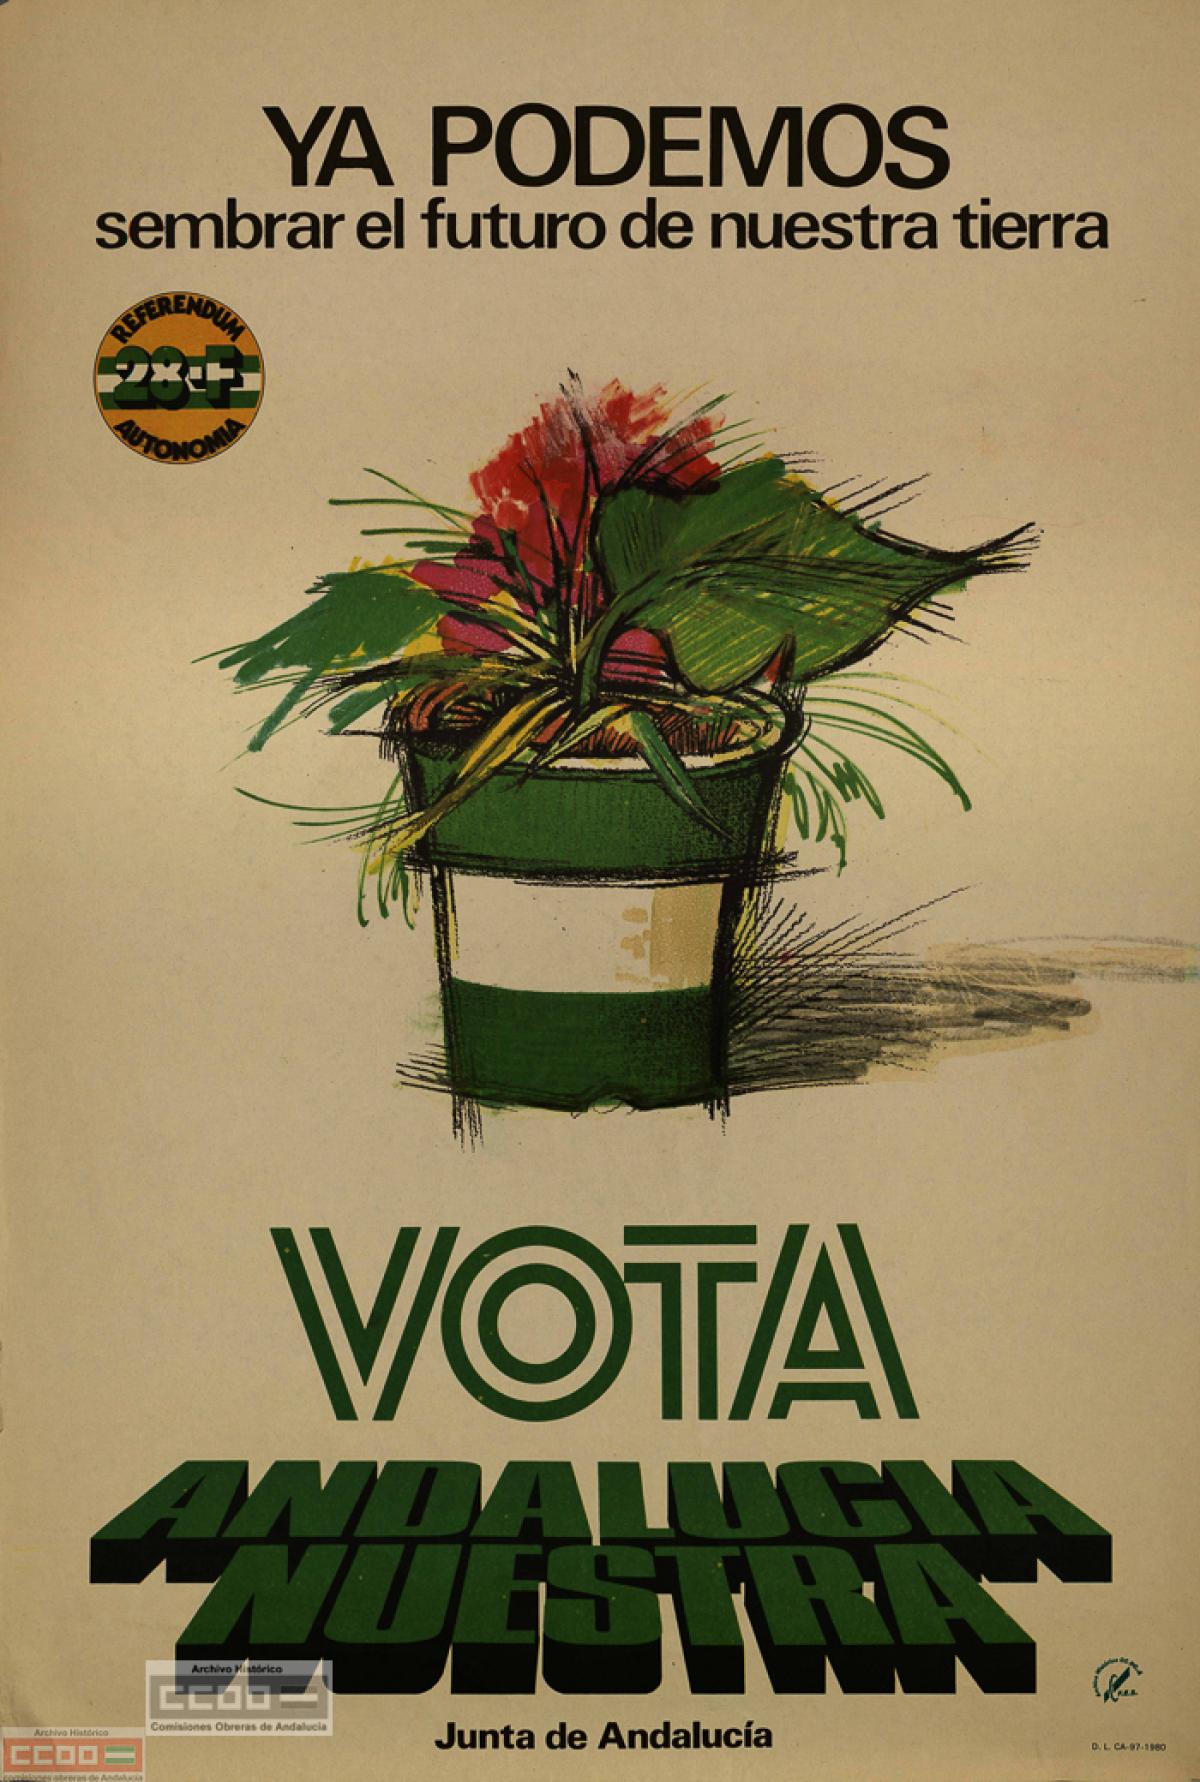 Cartel de la Junta de Andalucía para el referéndum del 28F, 1980